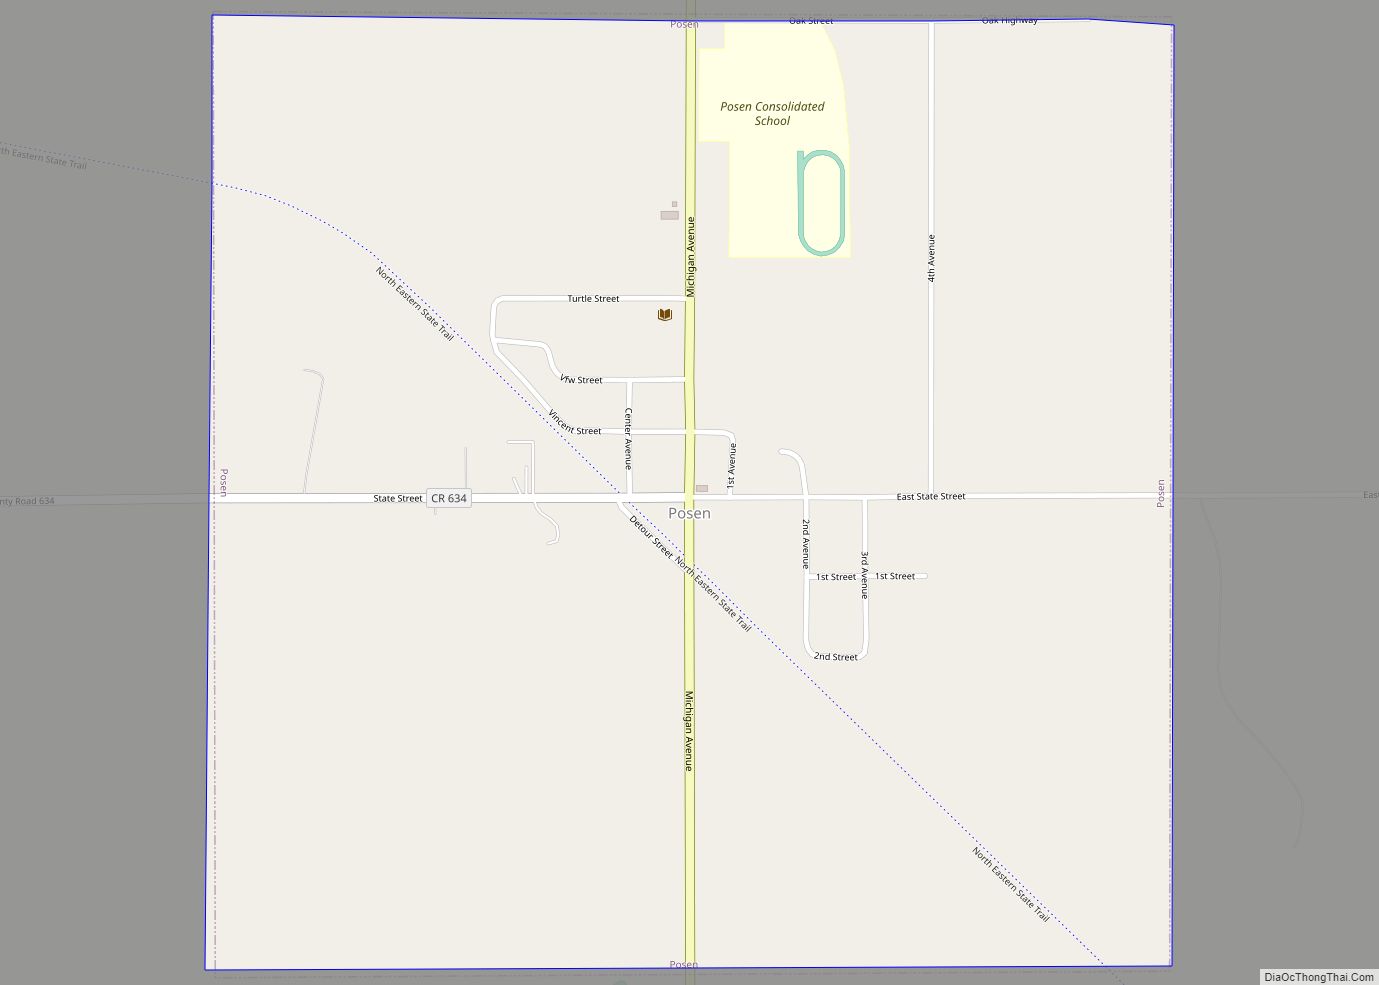 Map of Posen village, Michigan